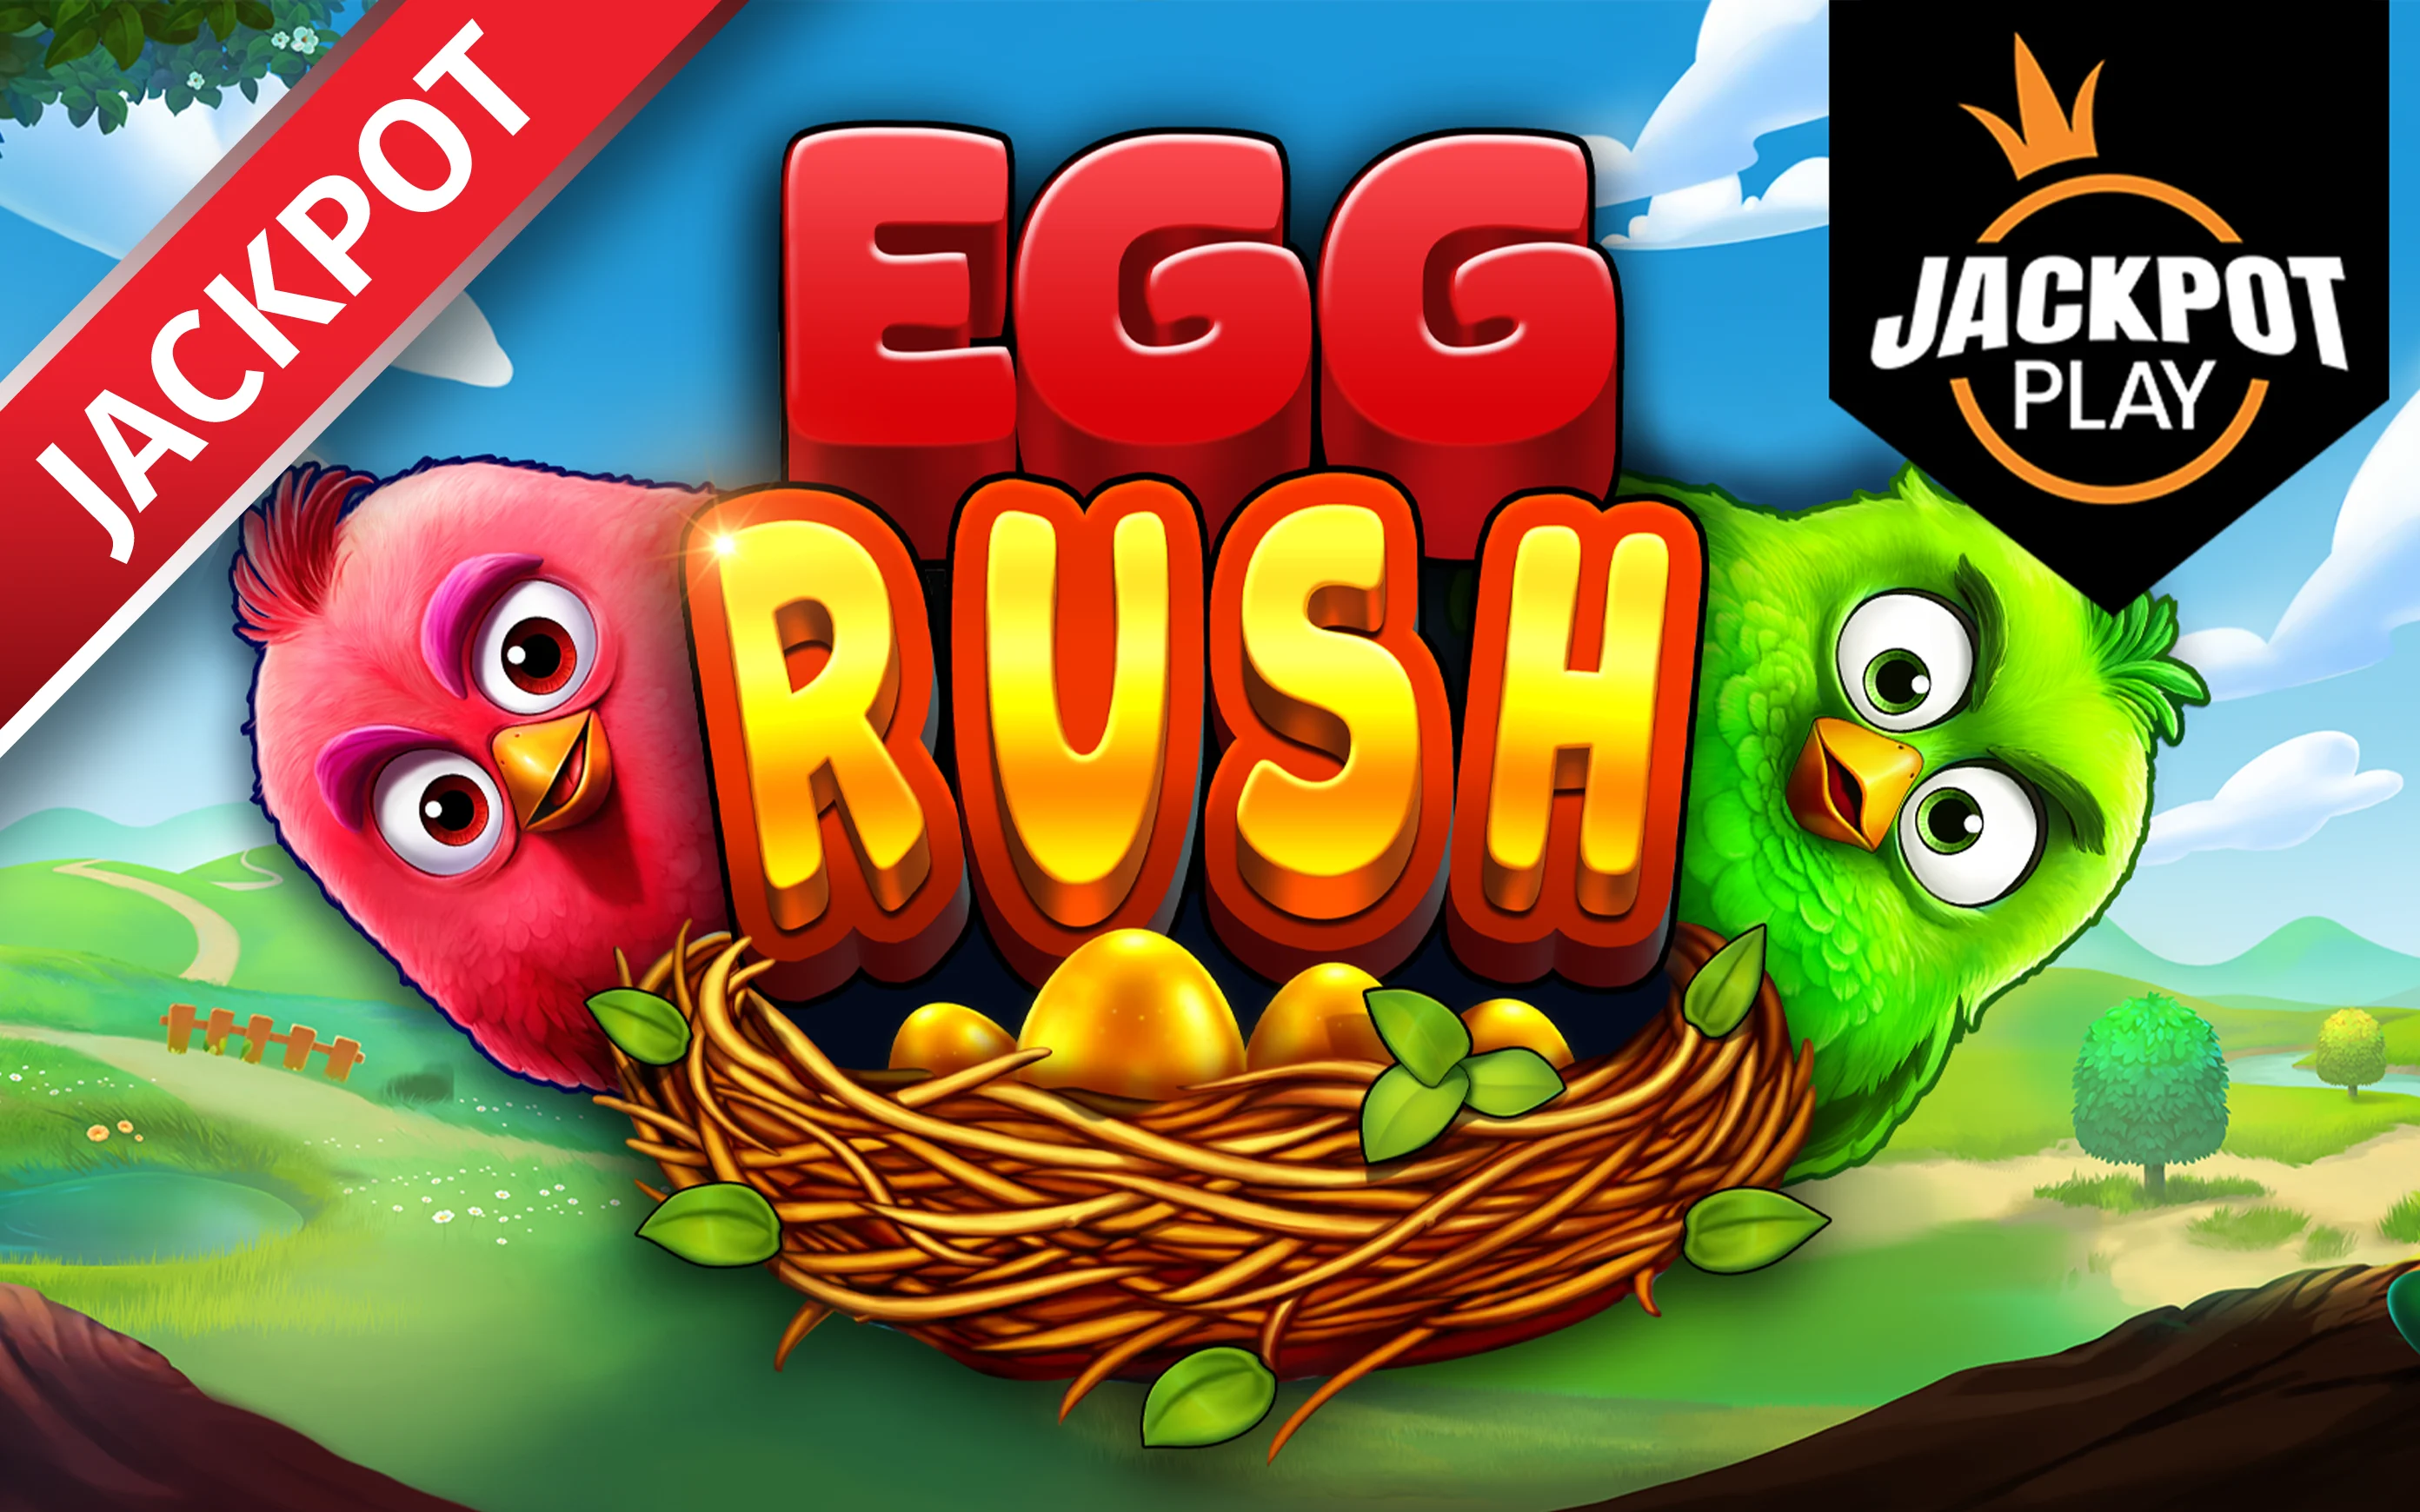 Παίξτε Egg Rush Jackpot Play στο online καζίνο Starcasino.be